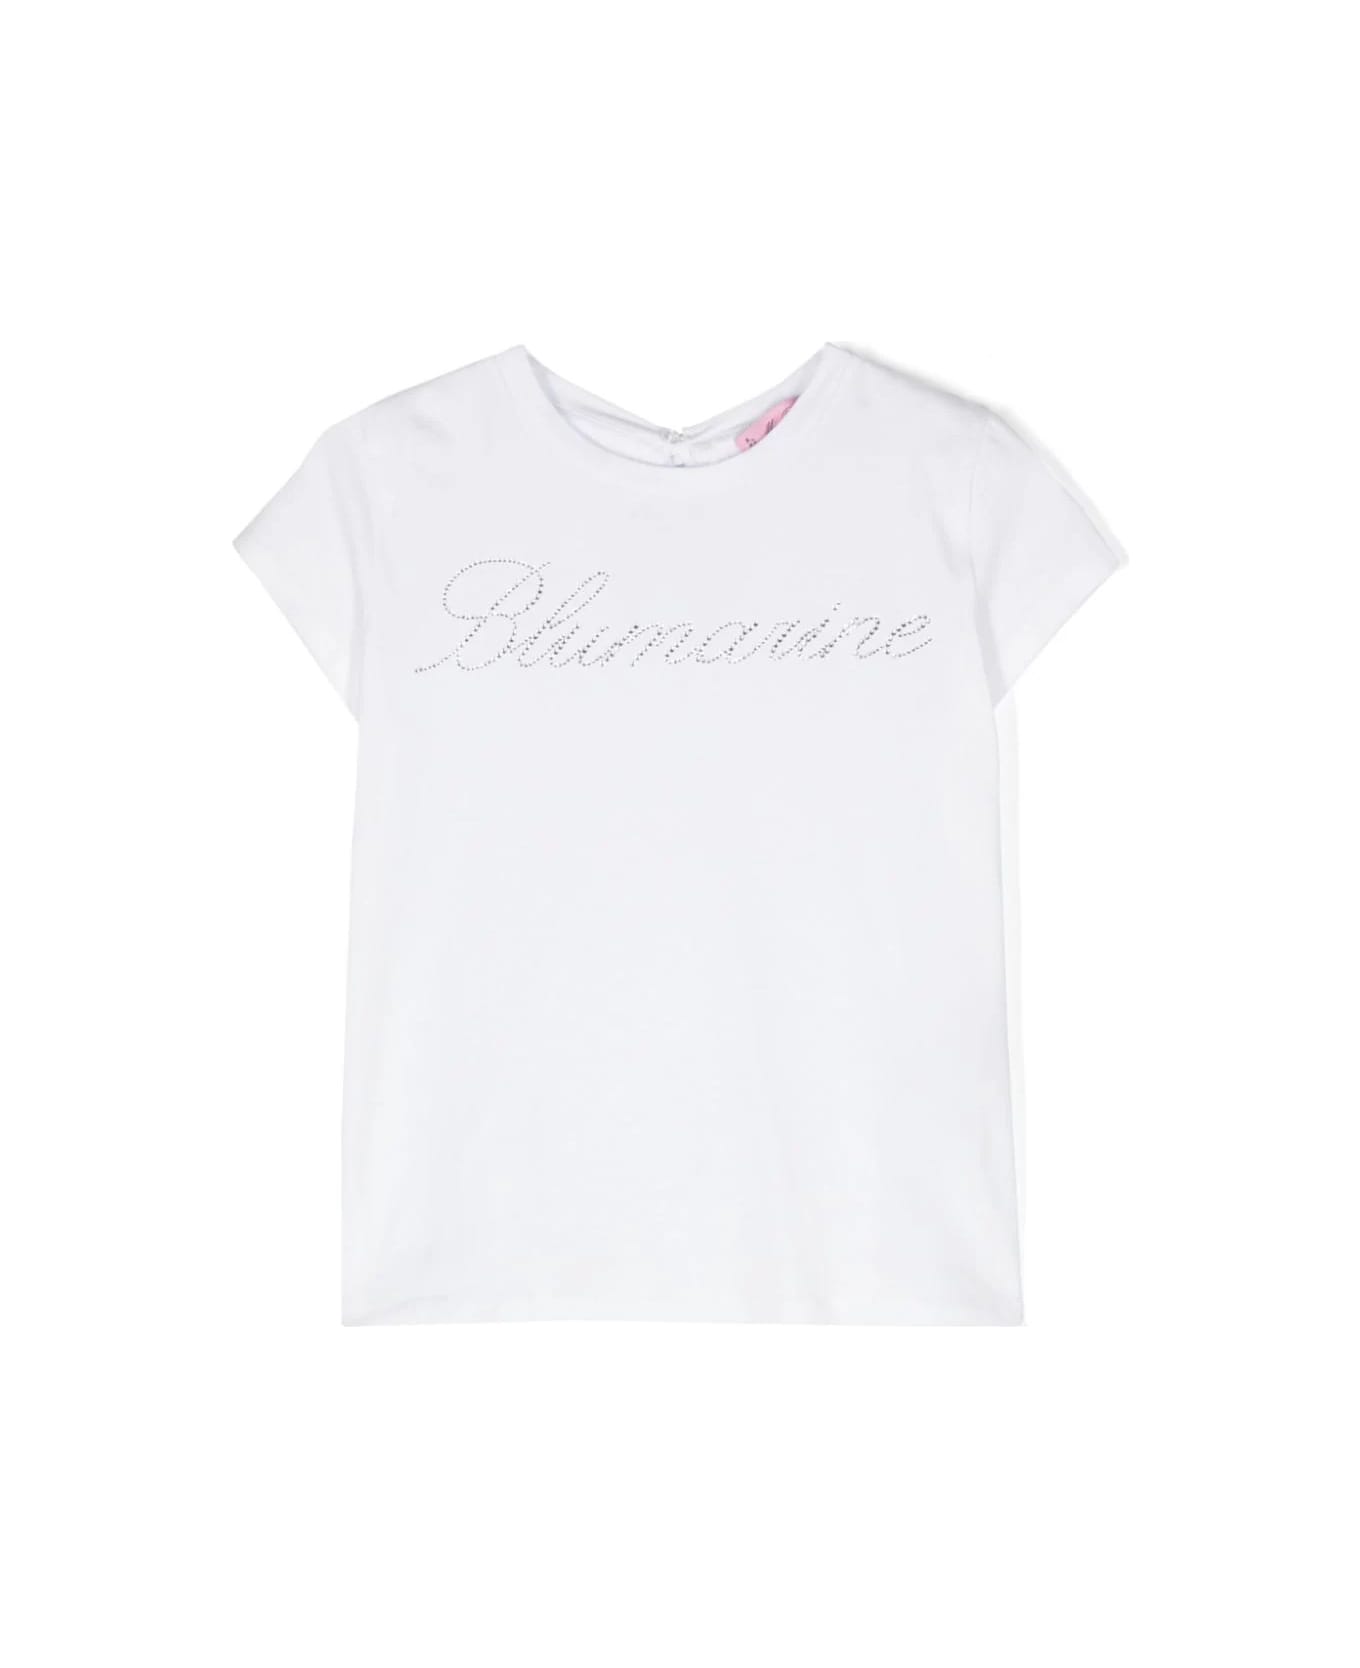 Miss Blumarine White T-shirt With Rhinestone Logo And Ruffle Detail - White